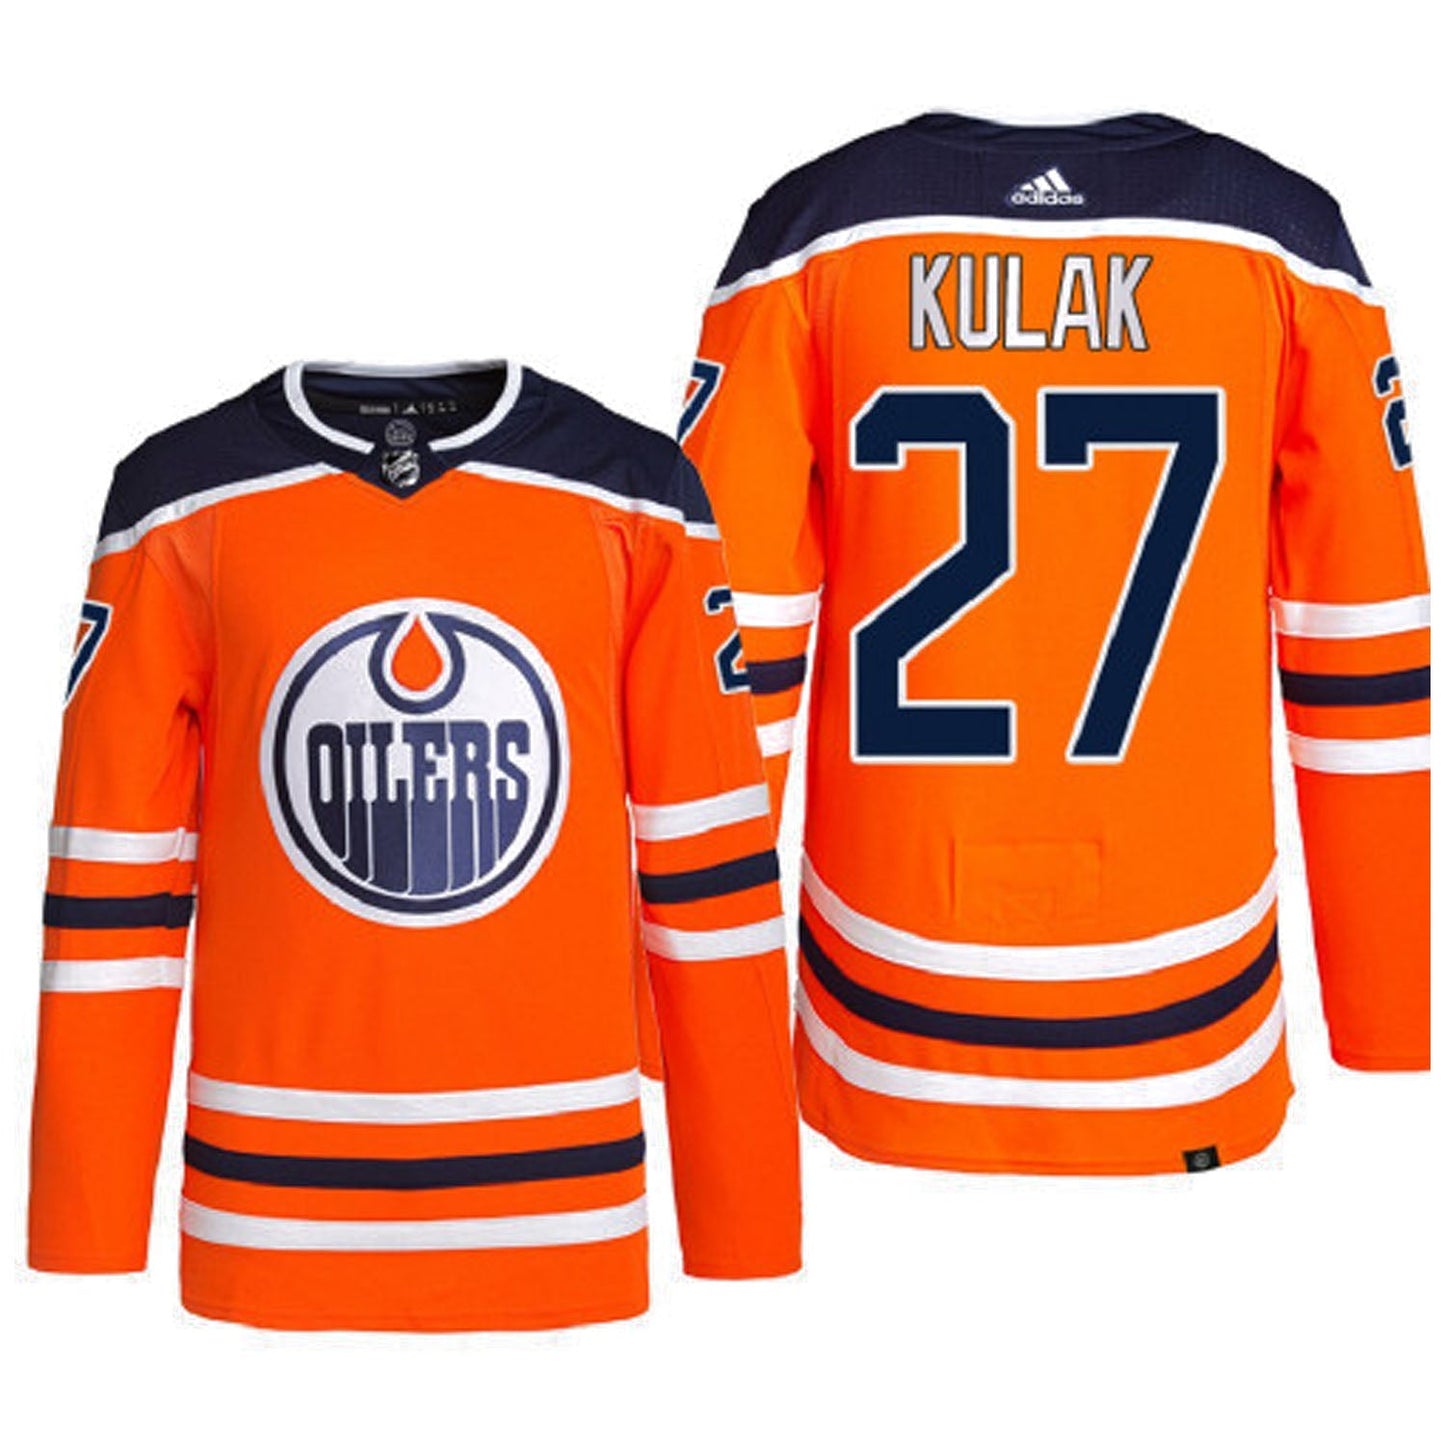 NHL Brett Kulak Edmonton Oilers 27 Jersey